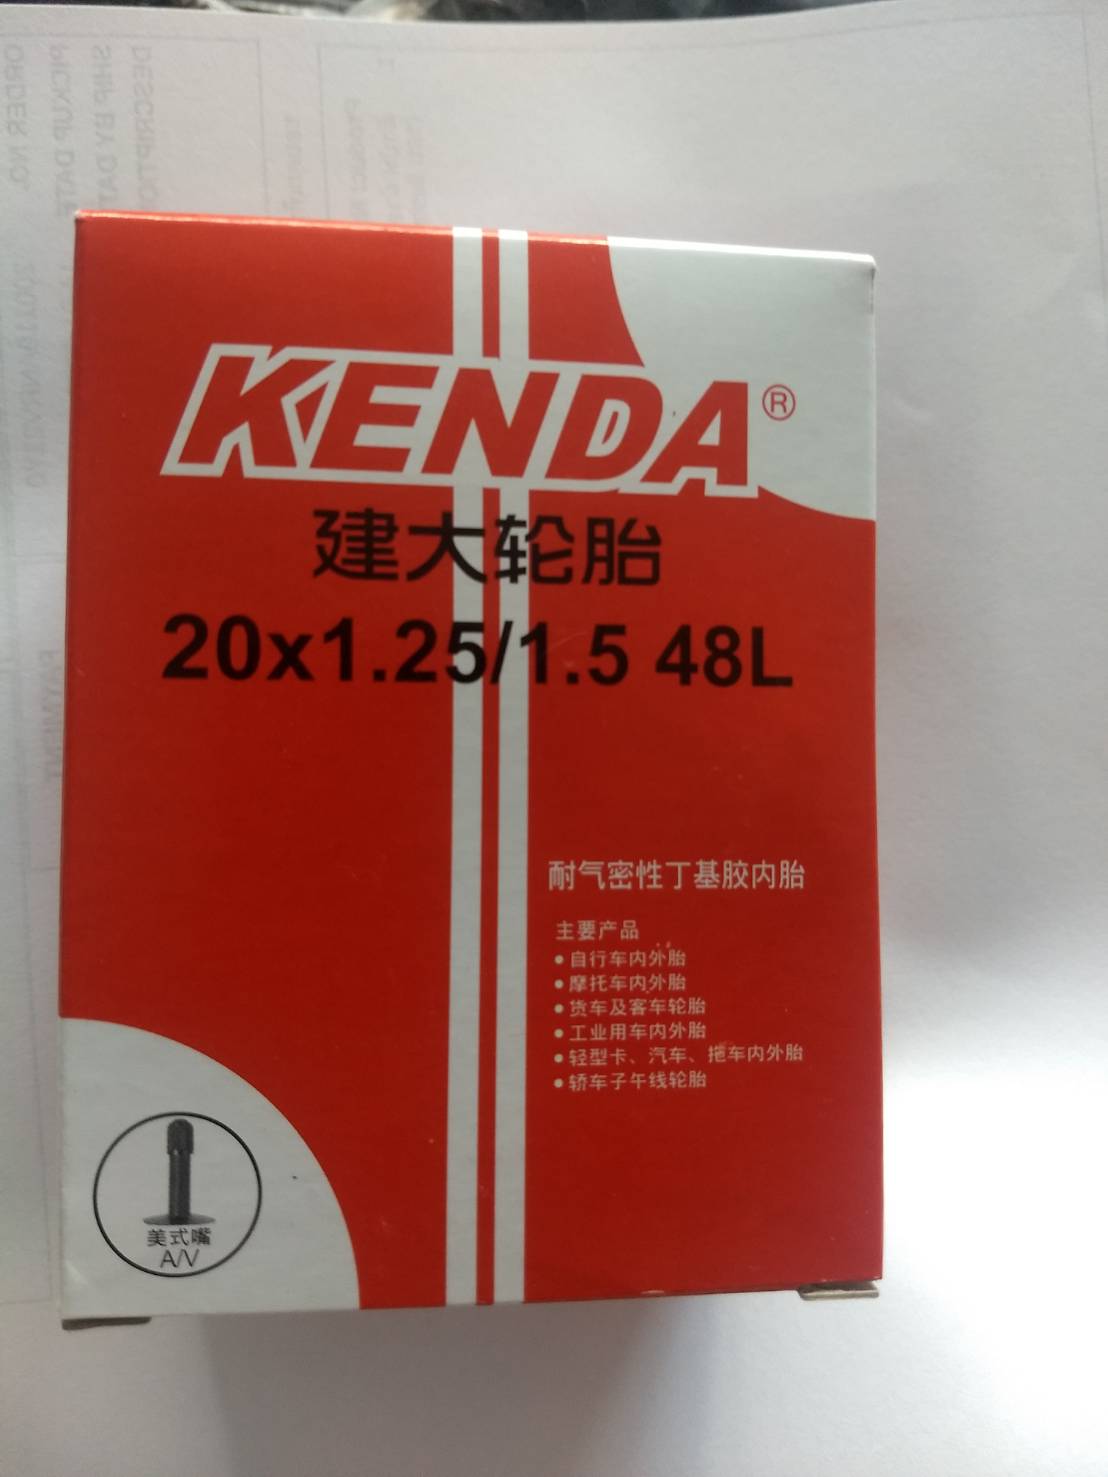 มุมมองเพิ่มเติมของสินค้า ยางใน kenda 20x1.25/1.5 av48